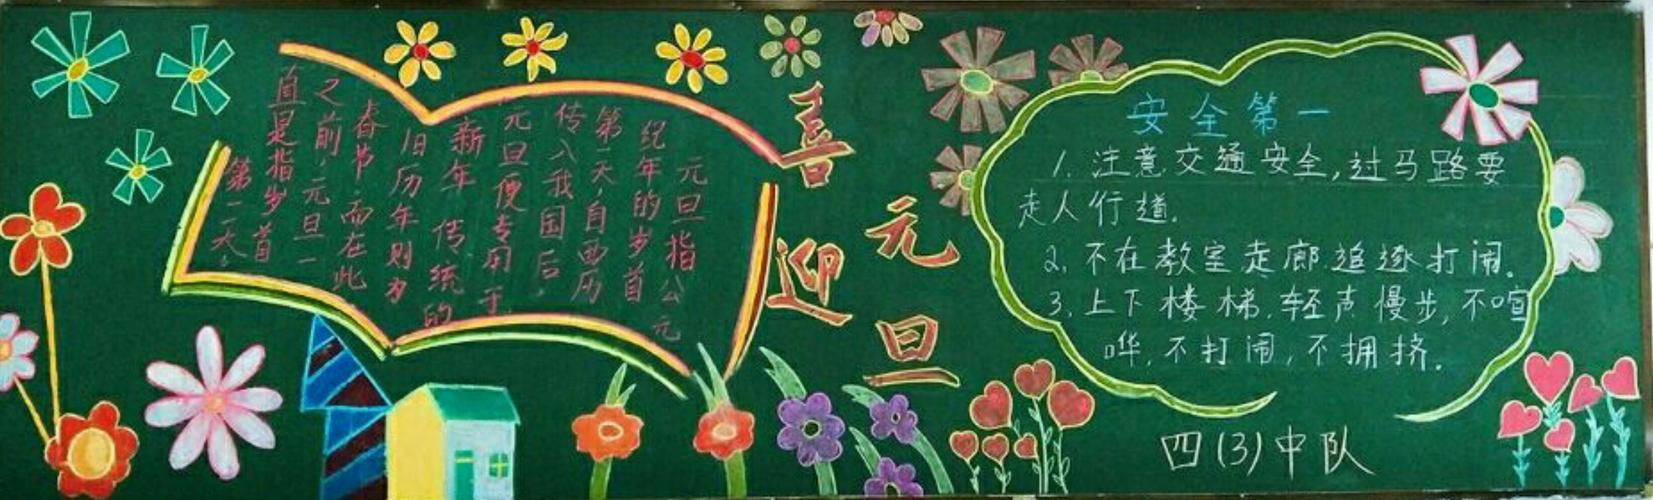 大宁县城关小学组织开展《欢庆元旦,安全出行》为主题黑板报评比活动